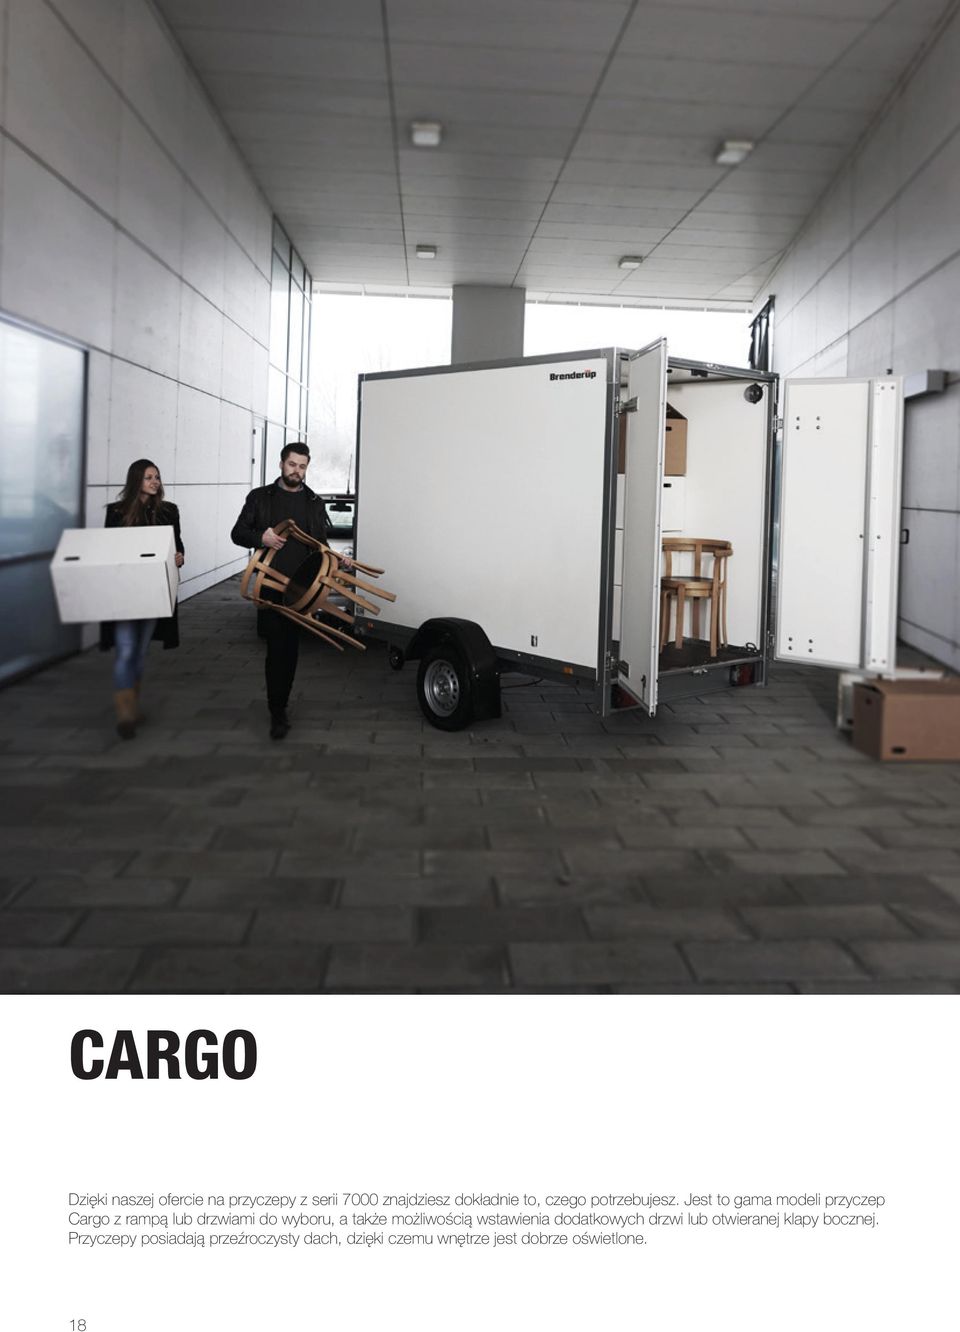 Jest to gama modeli przyczep Cargo z rampą lub drzwiami do wyboru, a także